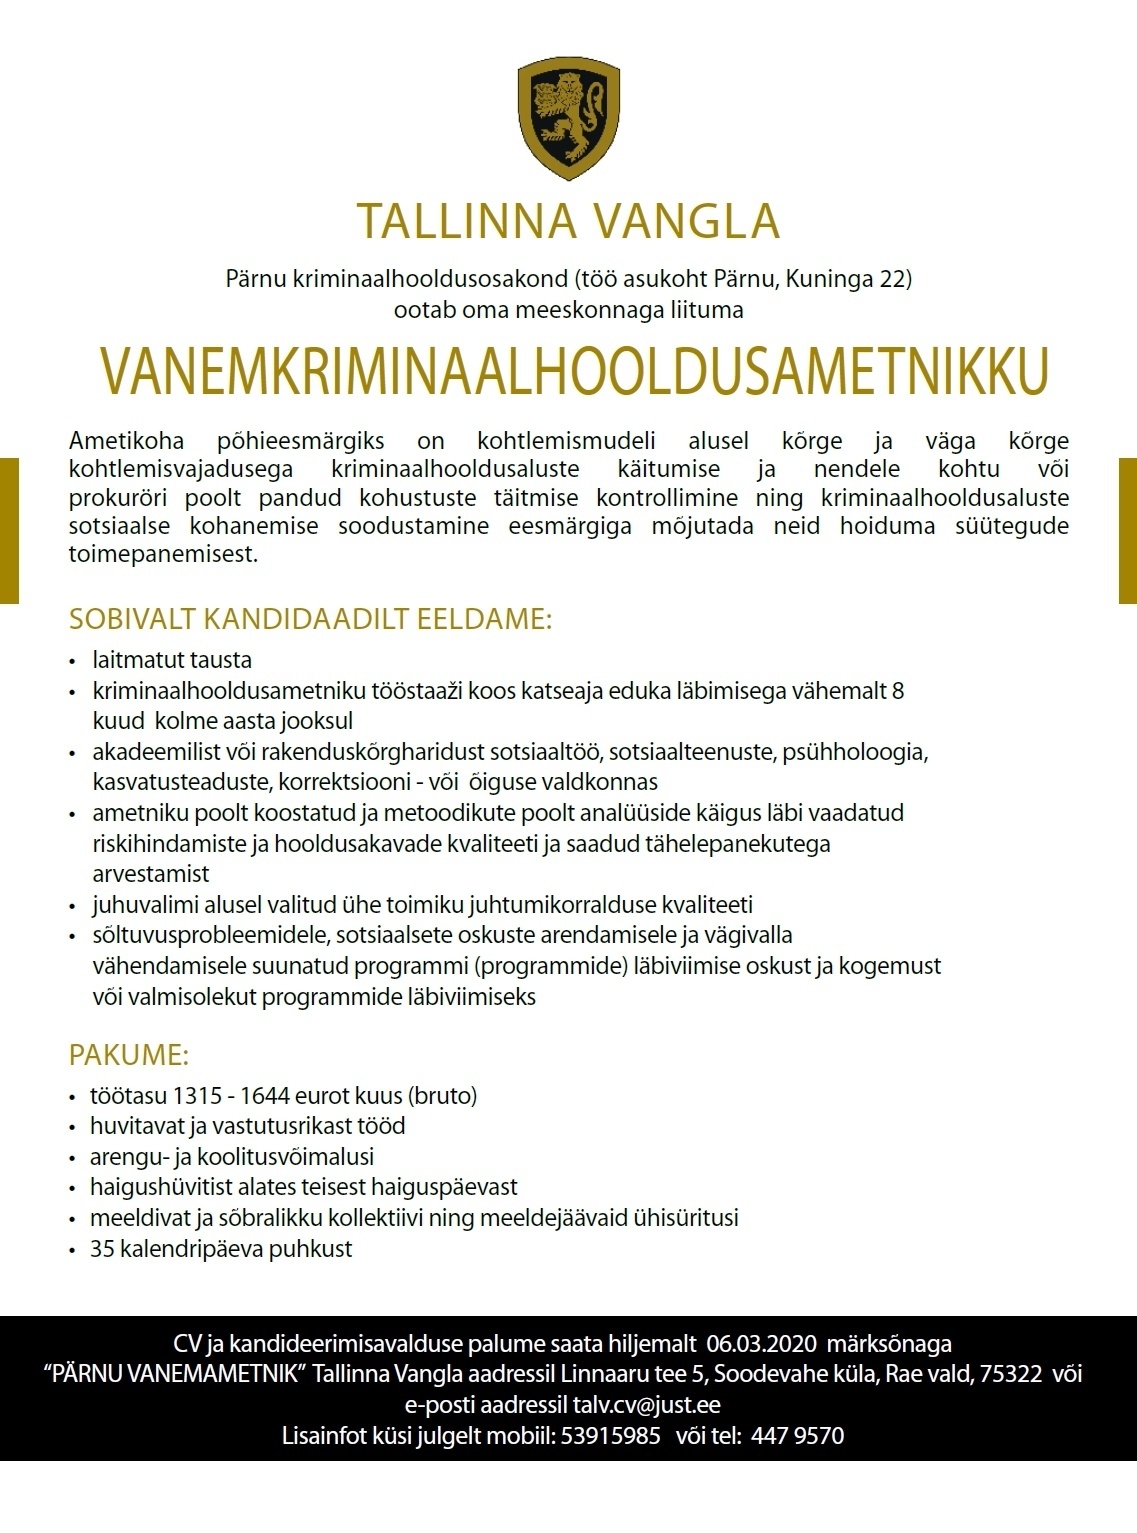 Tallinna Vangla Pärnu Kriminaalhooldusosakonna vanemkriminaalhooldusametnik